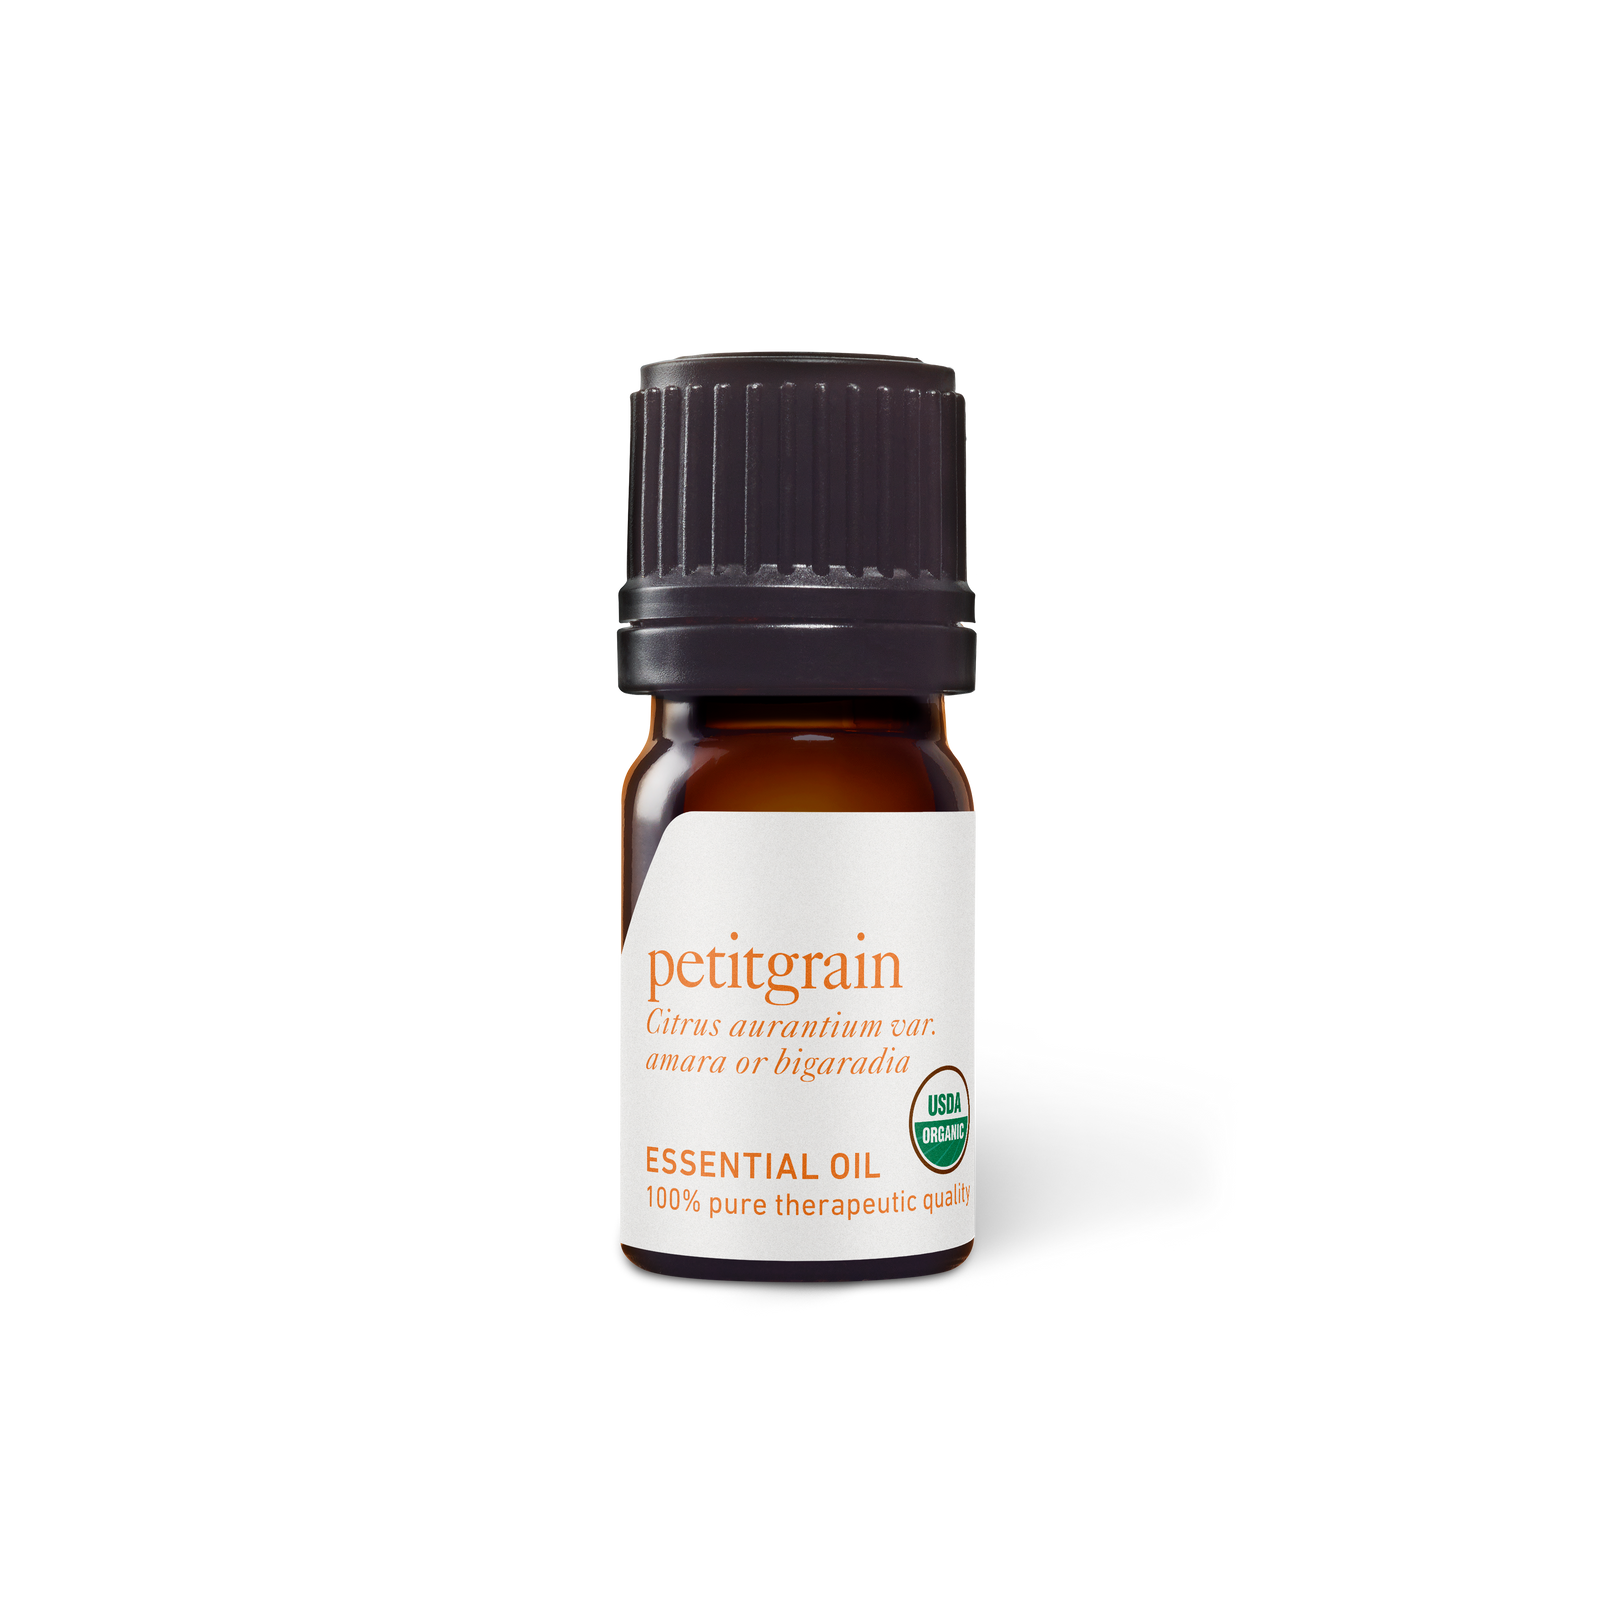 Petitgrain (Bigarade) Oil